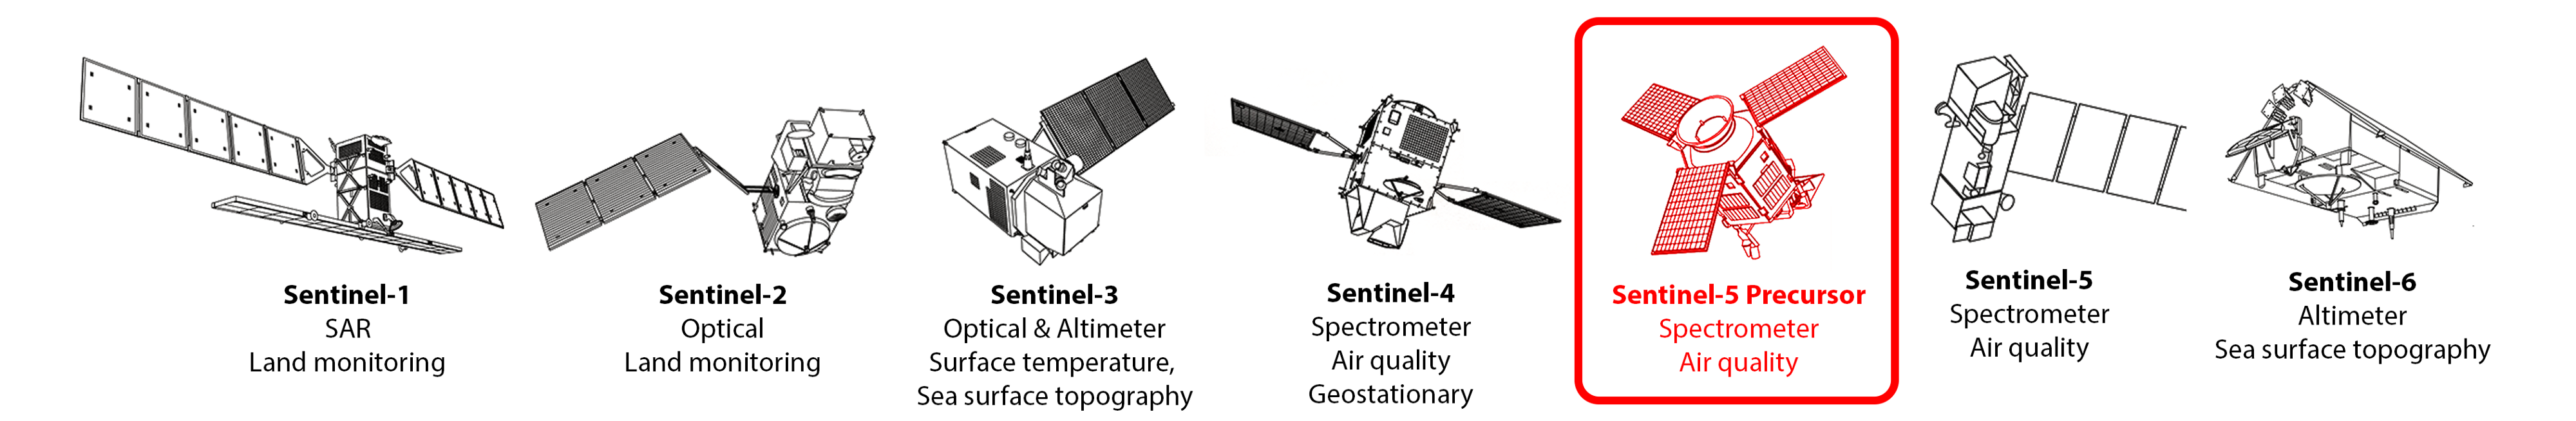 Copernicus Sentinel satellites (©ESA edited)